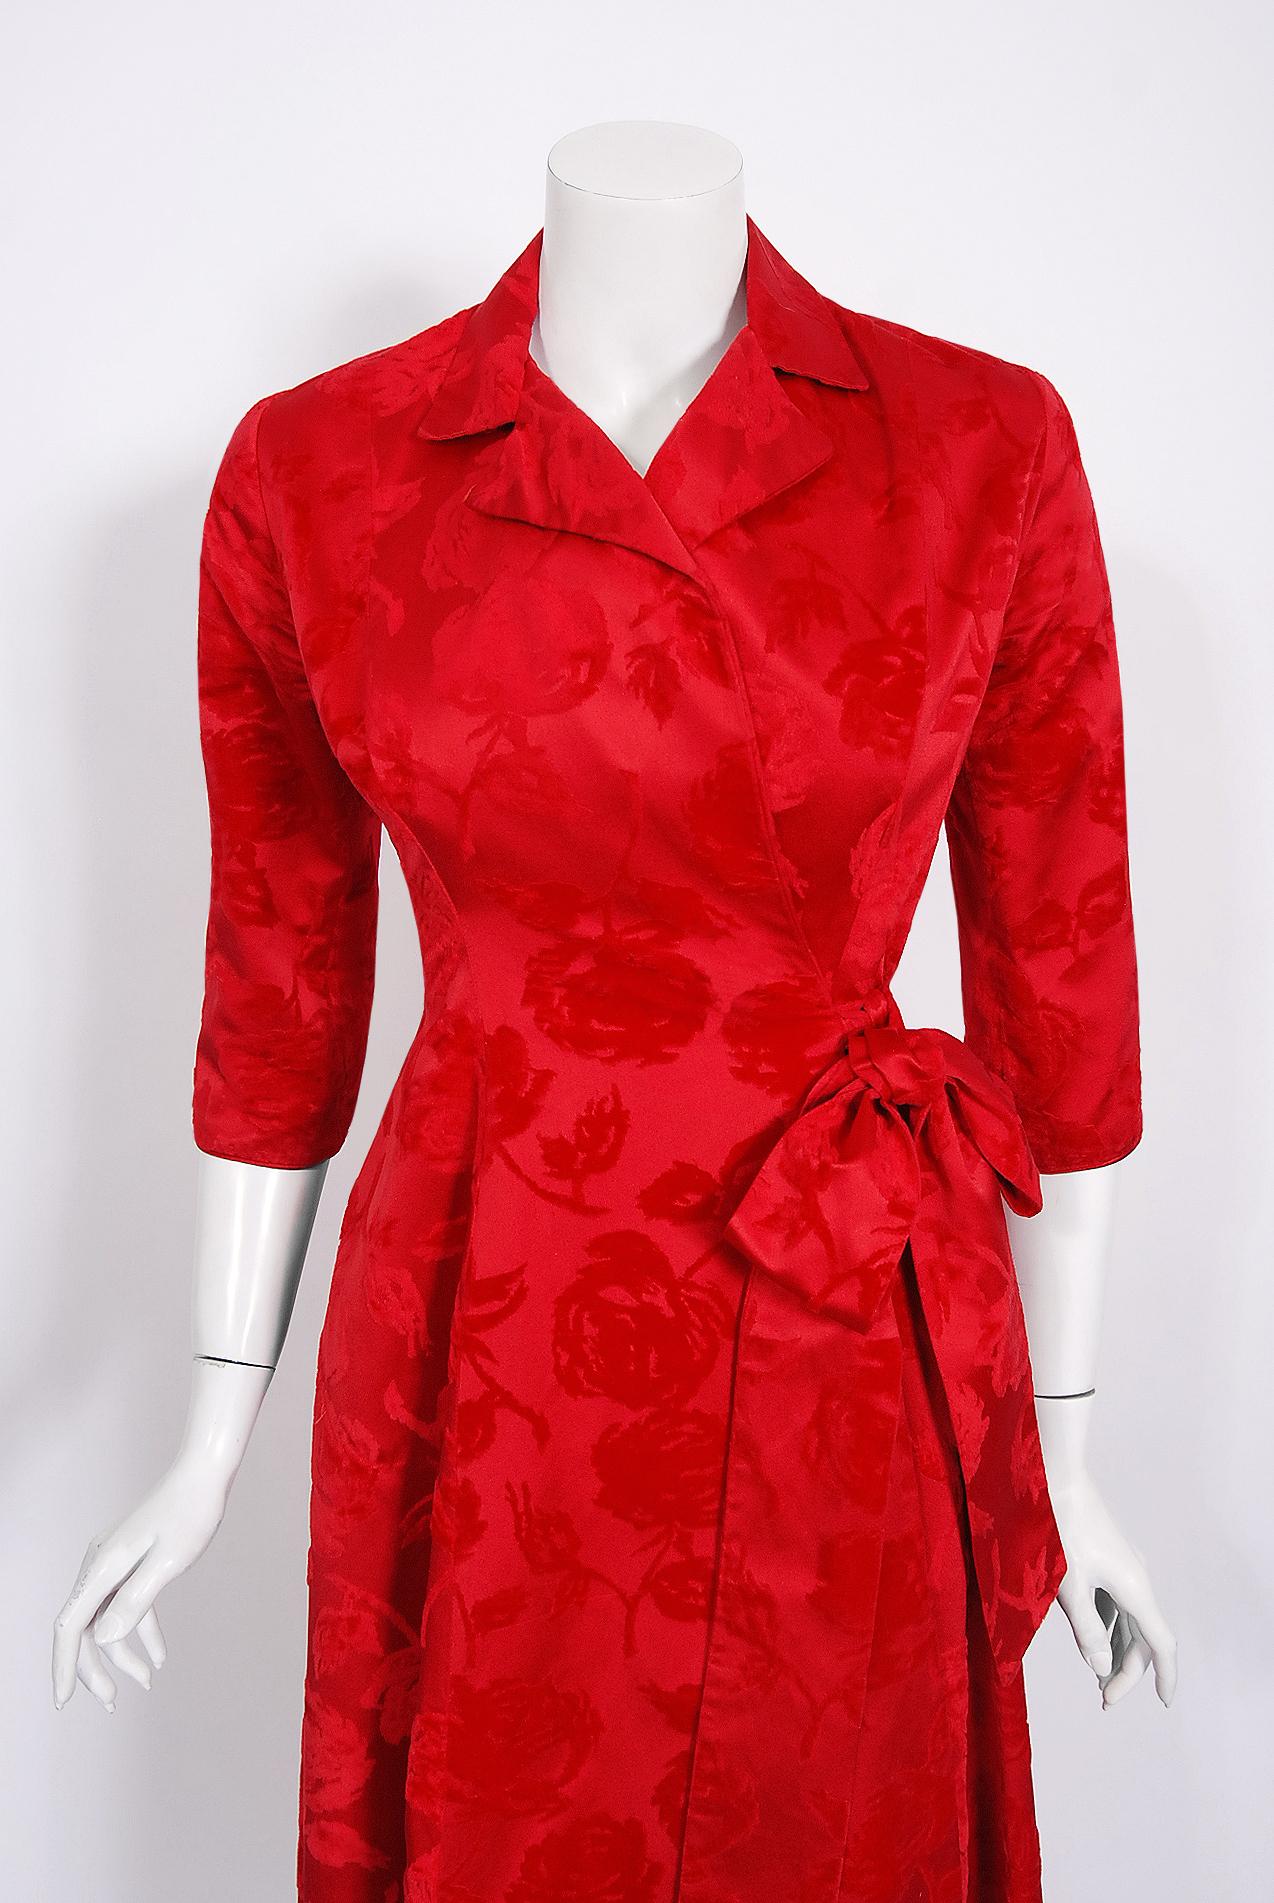 Magnifique robe de chambre Juel Park de Beverly Hills Couture des années 1960, faite sur mesure pour la belle Mme Jerry Lewis, Patti Palmer. Jerry Lewis, surnommé 